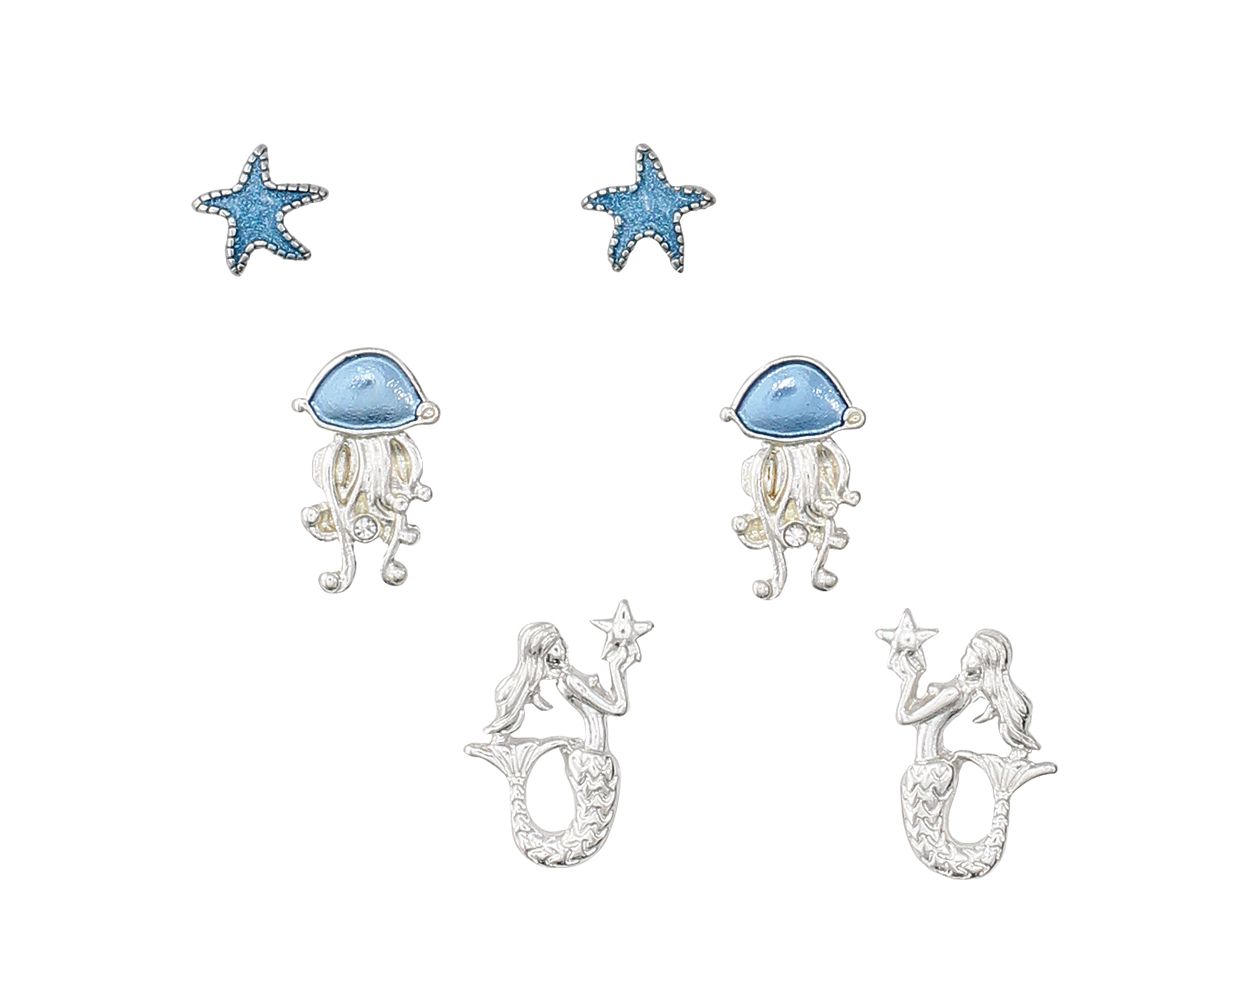 Periwinkle Blue Jellyfish Mermaid Earring Set